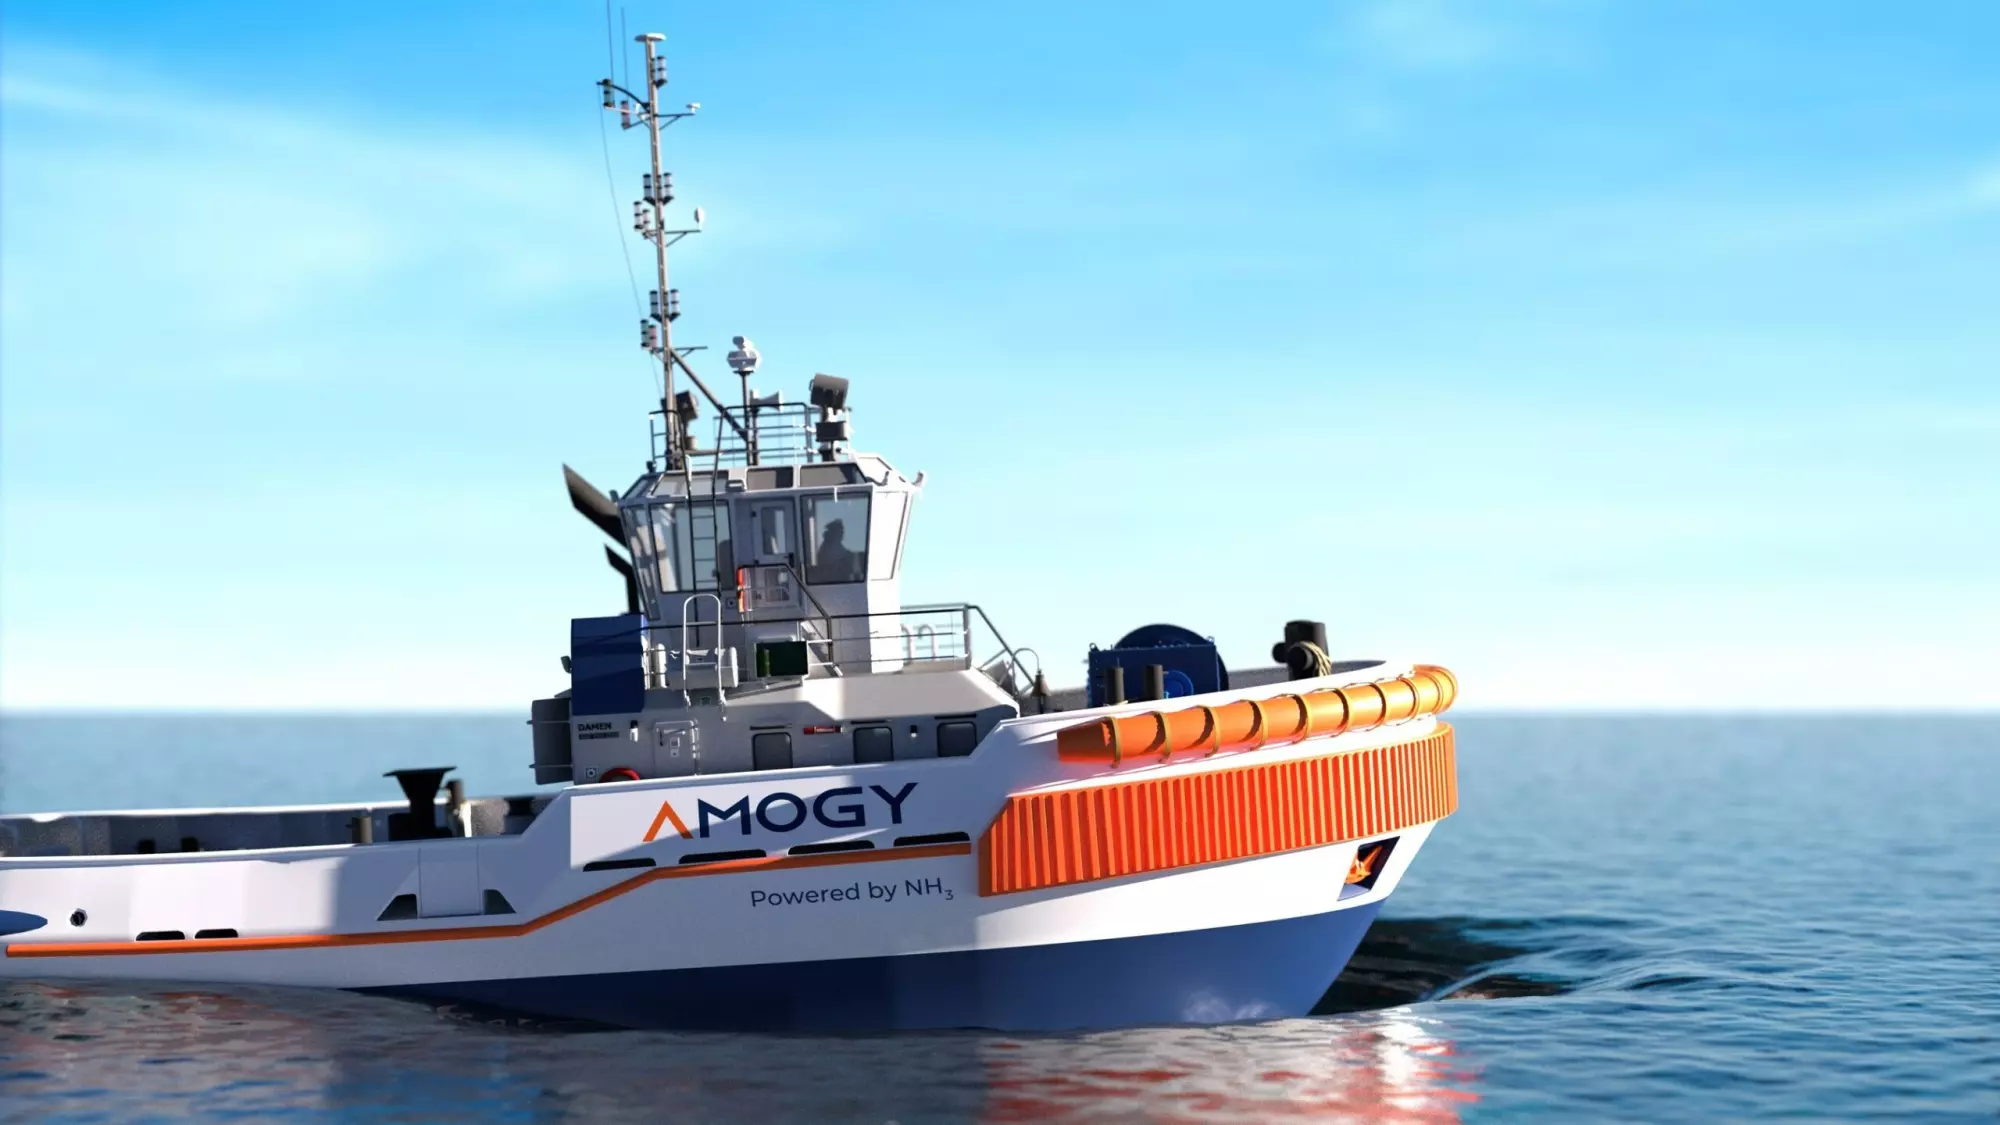 A companhia está adaptando um modelo de navio rebocador para a iniciativa de sustentabilidade e cogita apresentar o projeto até o fim de 2023. A utilização da amônia como combustível na embarcação da Amogy contribui para mais compromisso ambiental.